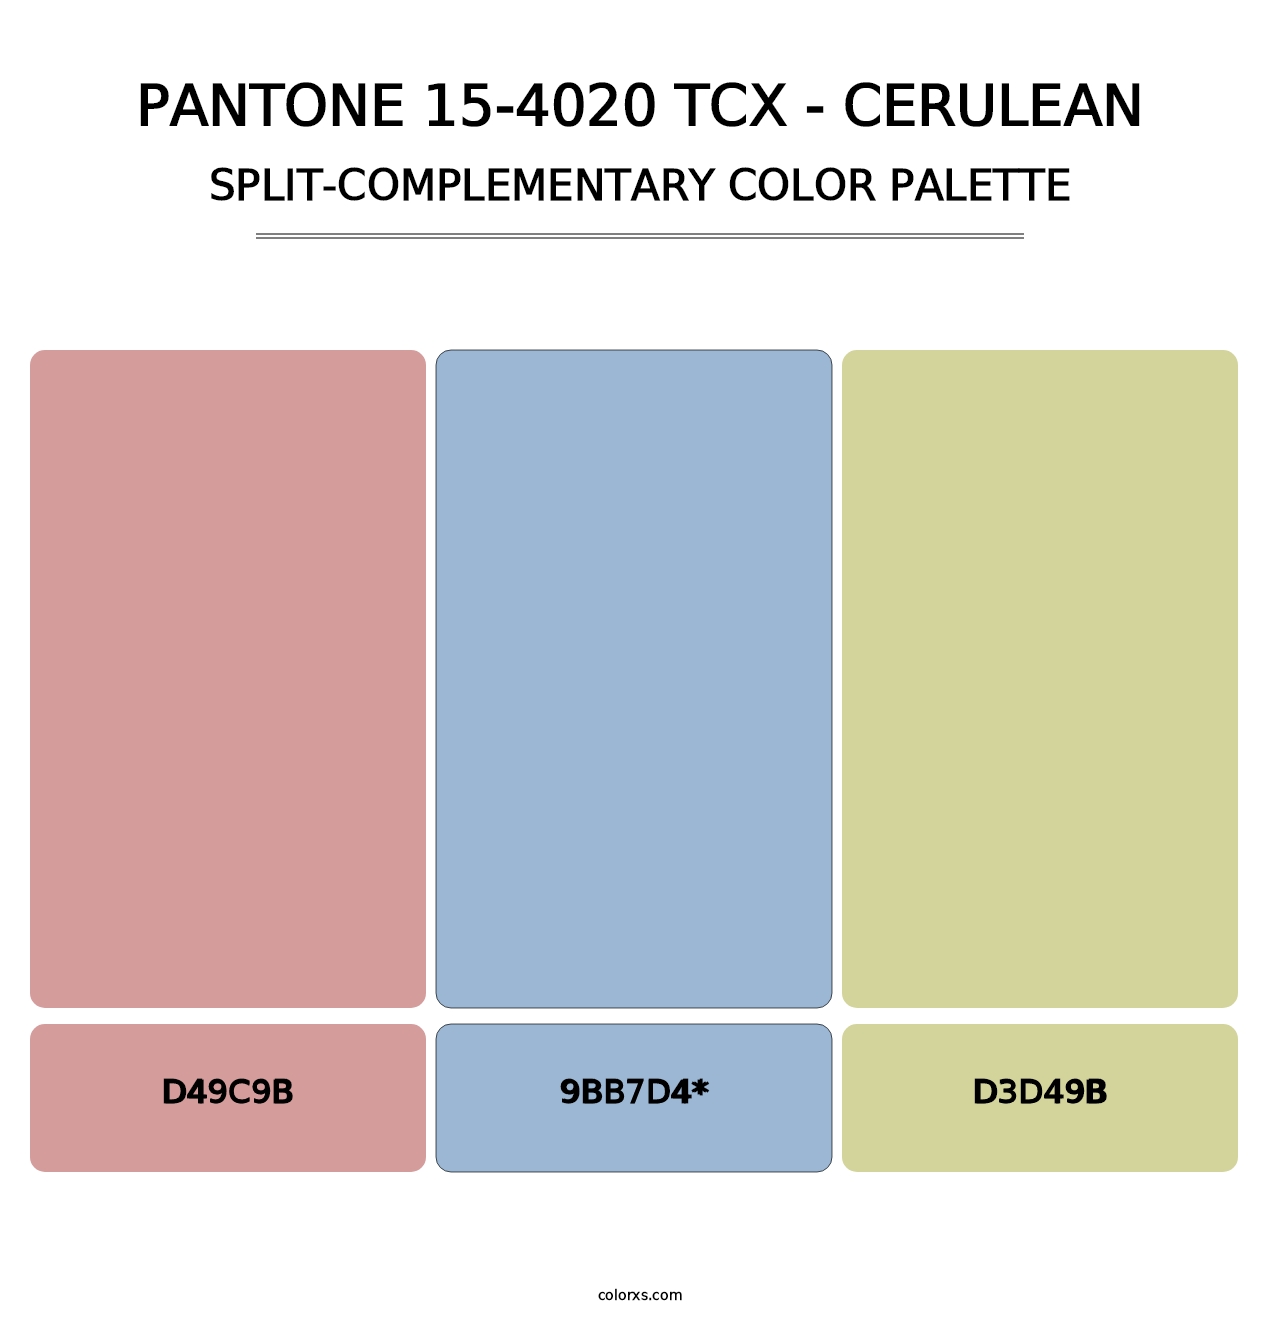 PANTONE 15-4020 TCX - Cerulean - Split-Complementary Color Palette